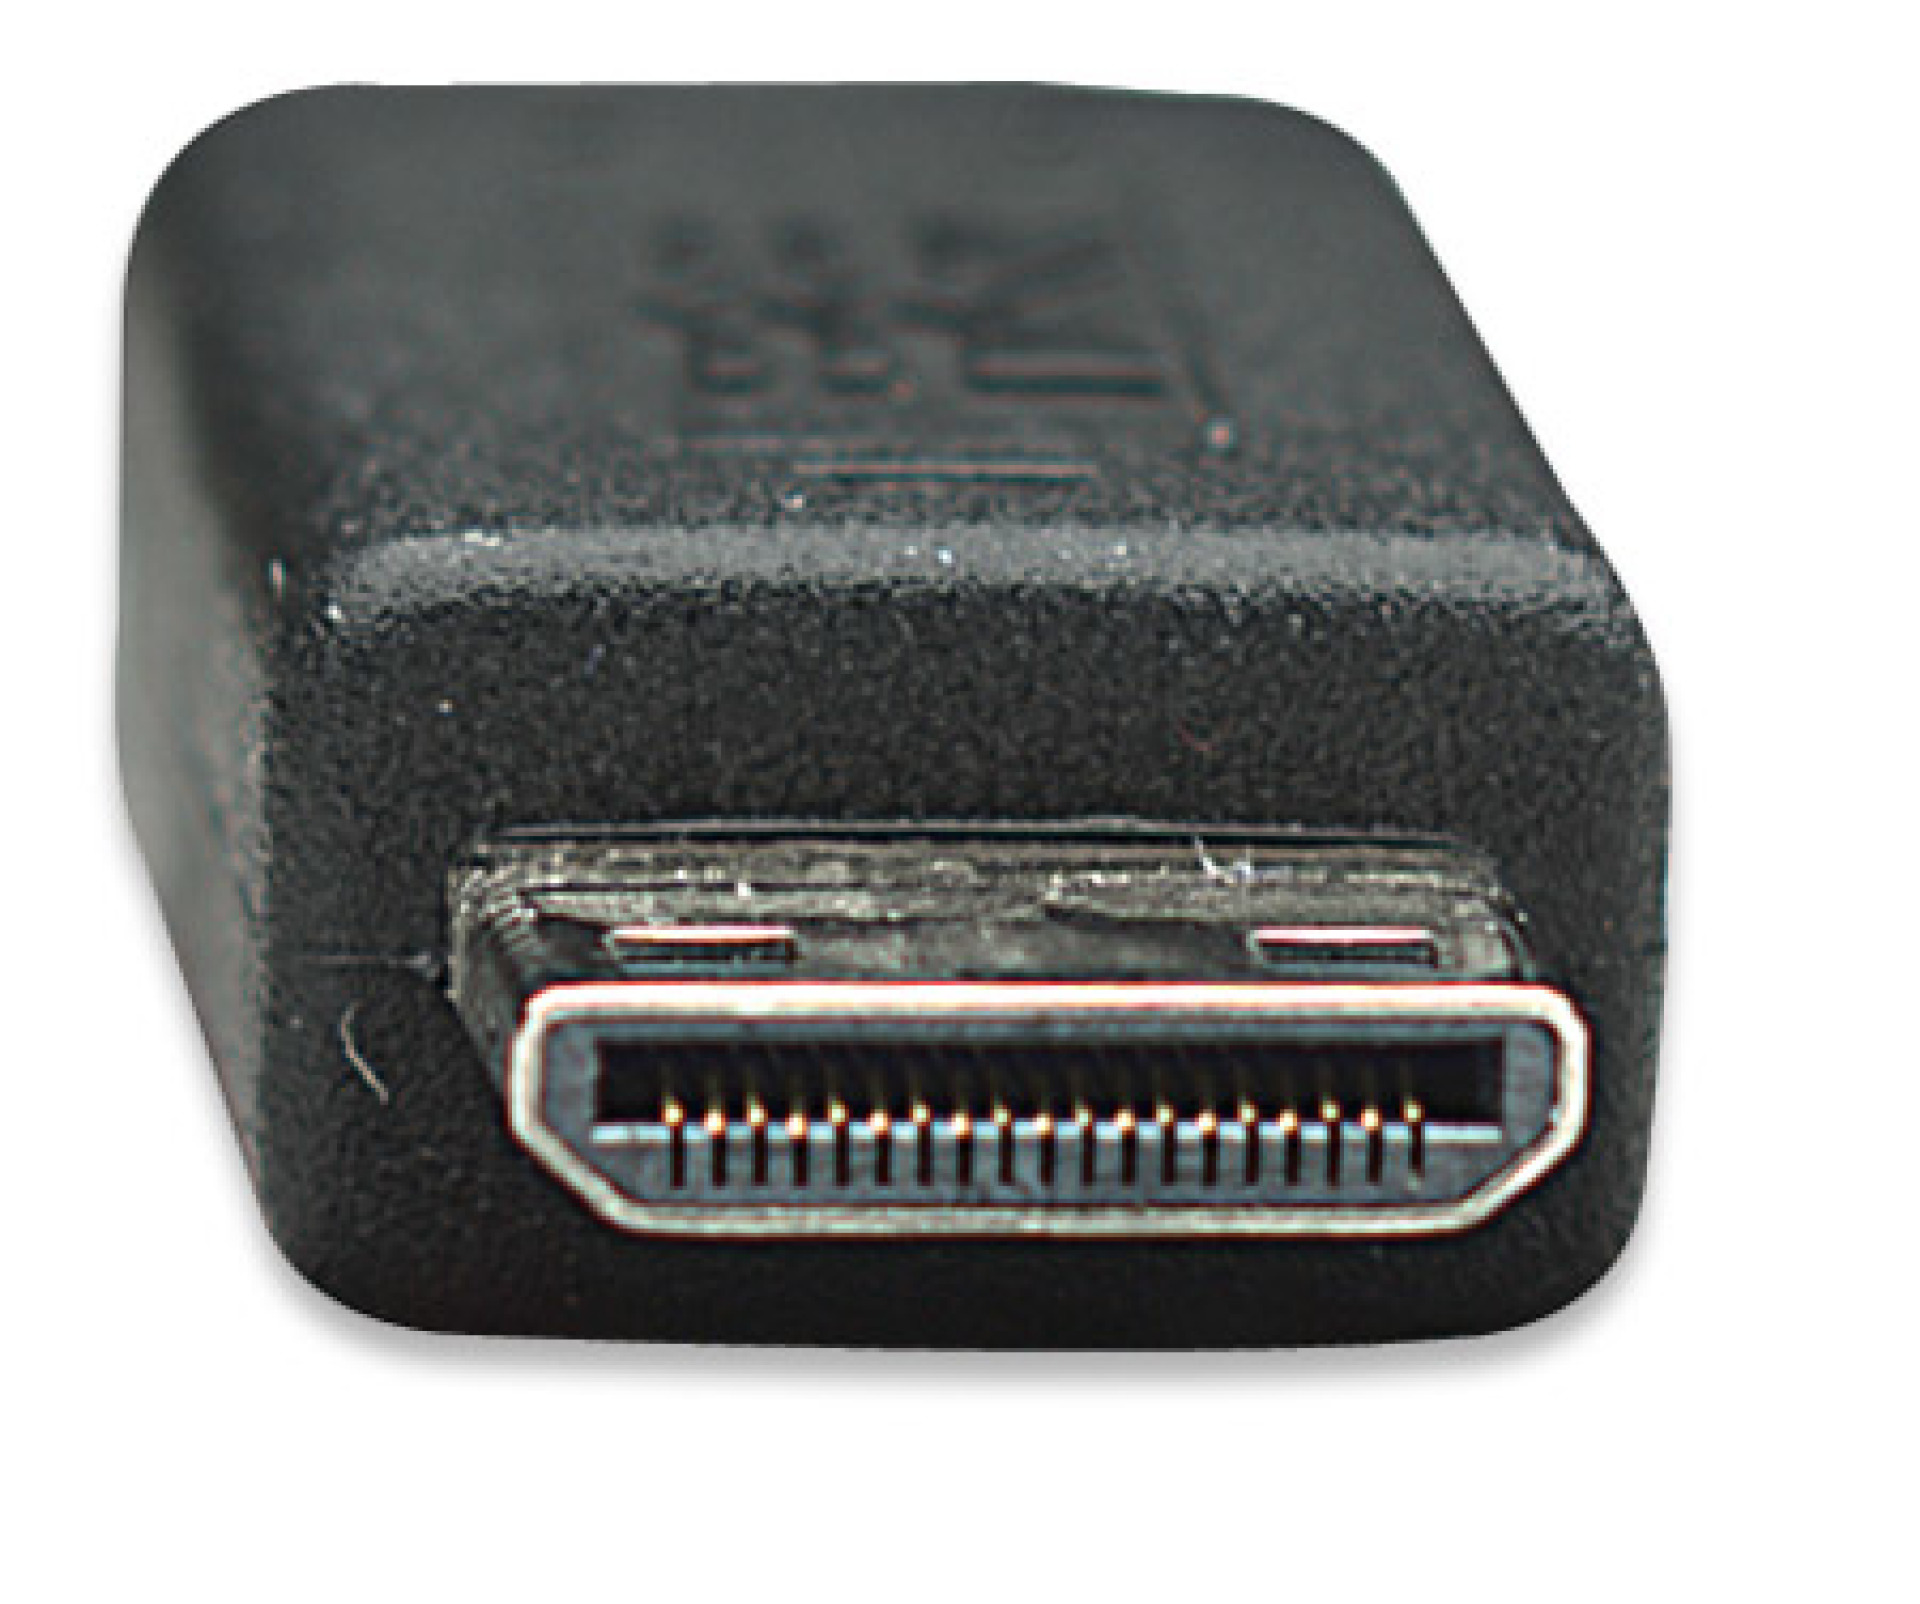 HDMI Kabel High Speed mit Ethernet und Mini HDMI Schwarz 1,8 m